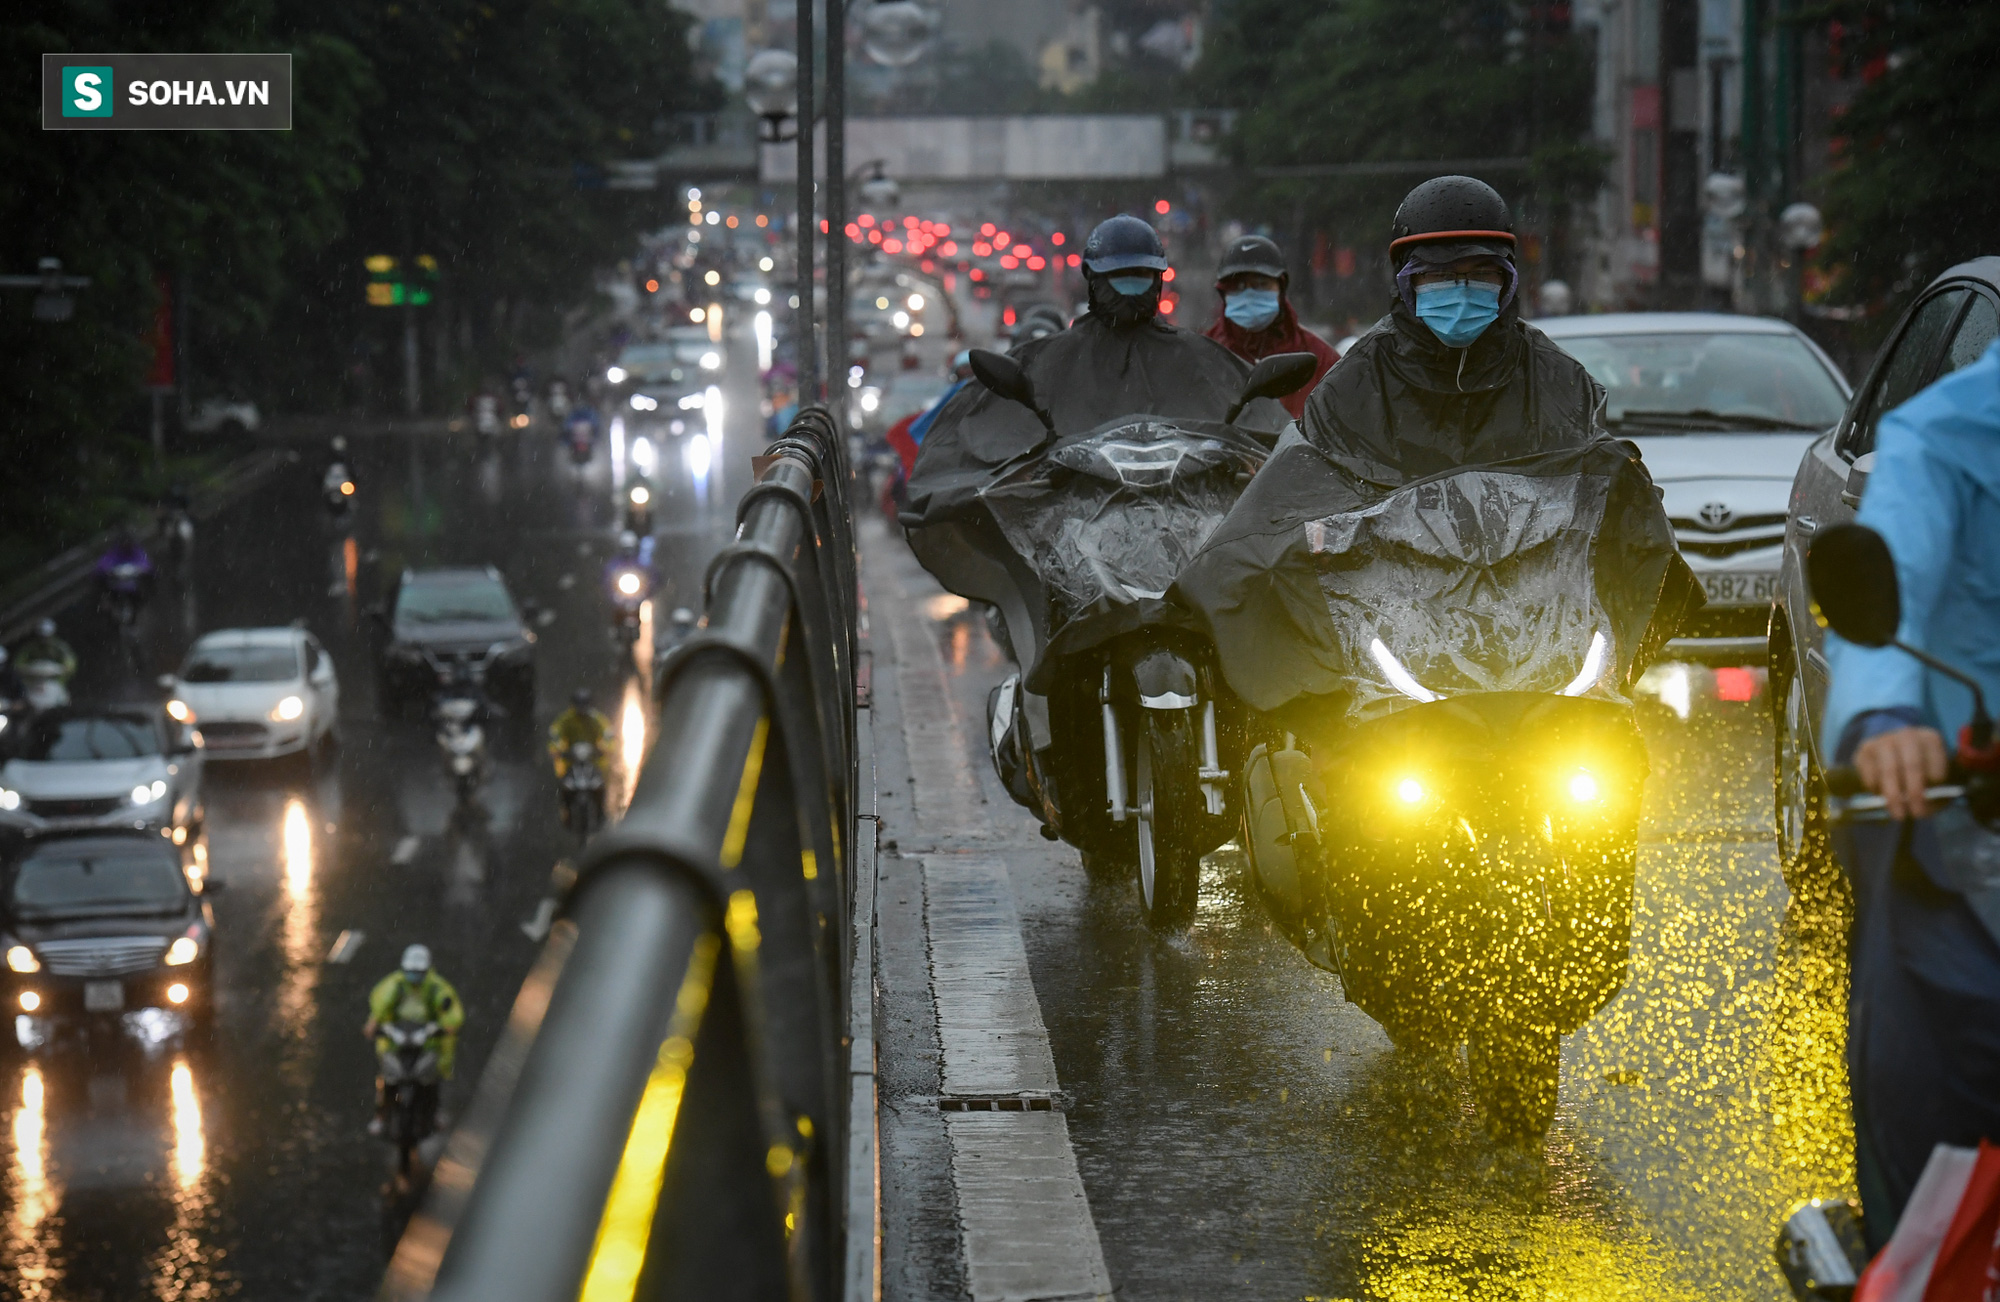 Đường phố Hà Nội tắc cứng trong mưa sáng đầu tuần, ô tô dàn hàng 6 chiếm hết lòng đường - Ảnh 5.